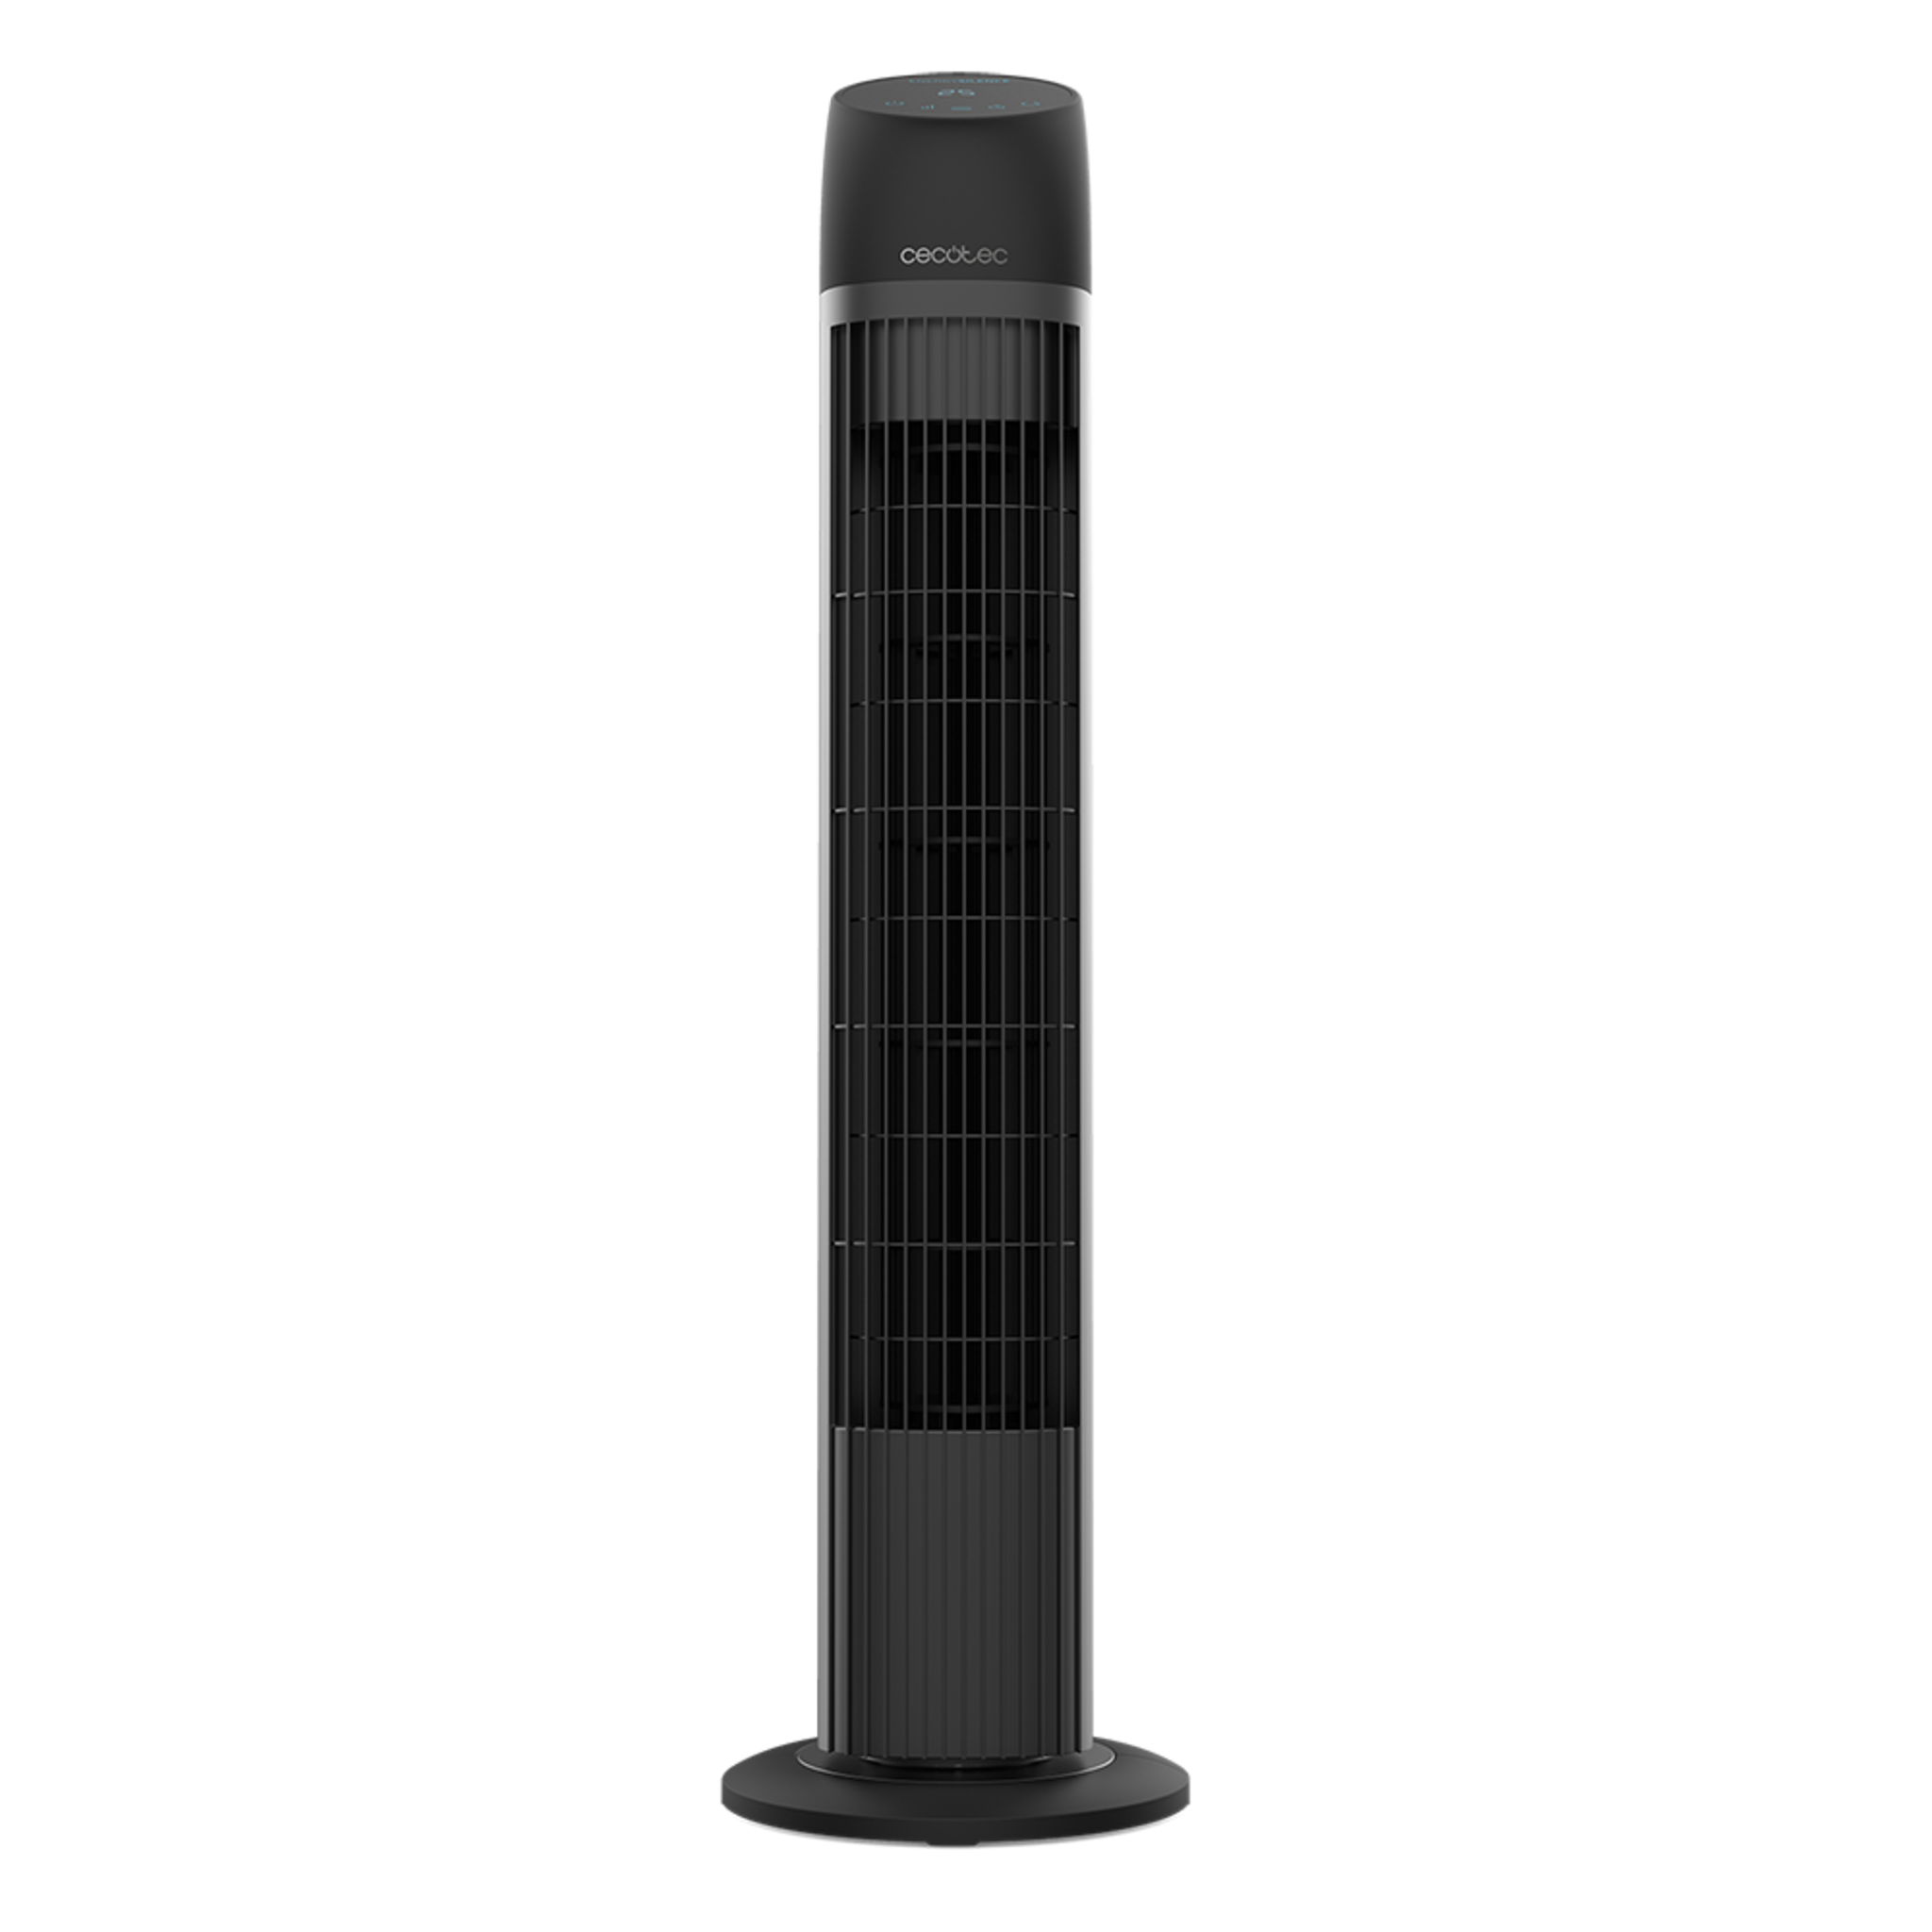 Ventilador de Torre con Mando a Distancia y Temporizador EnergySilence 8050 SkyLine Smart. 45 W, Altra 33", Motor de cobre, 3 Velocidades, Oscilación, Pantalla LED